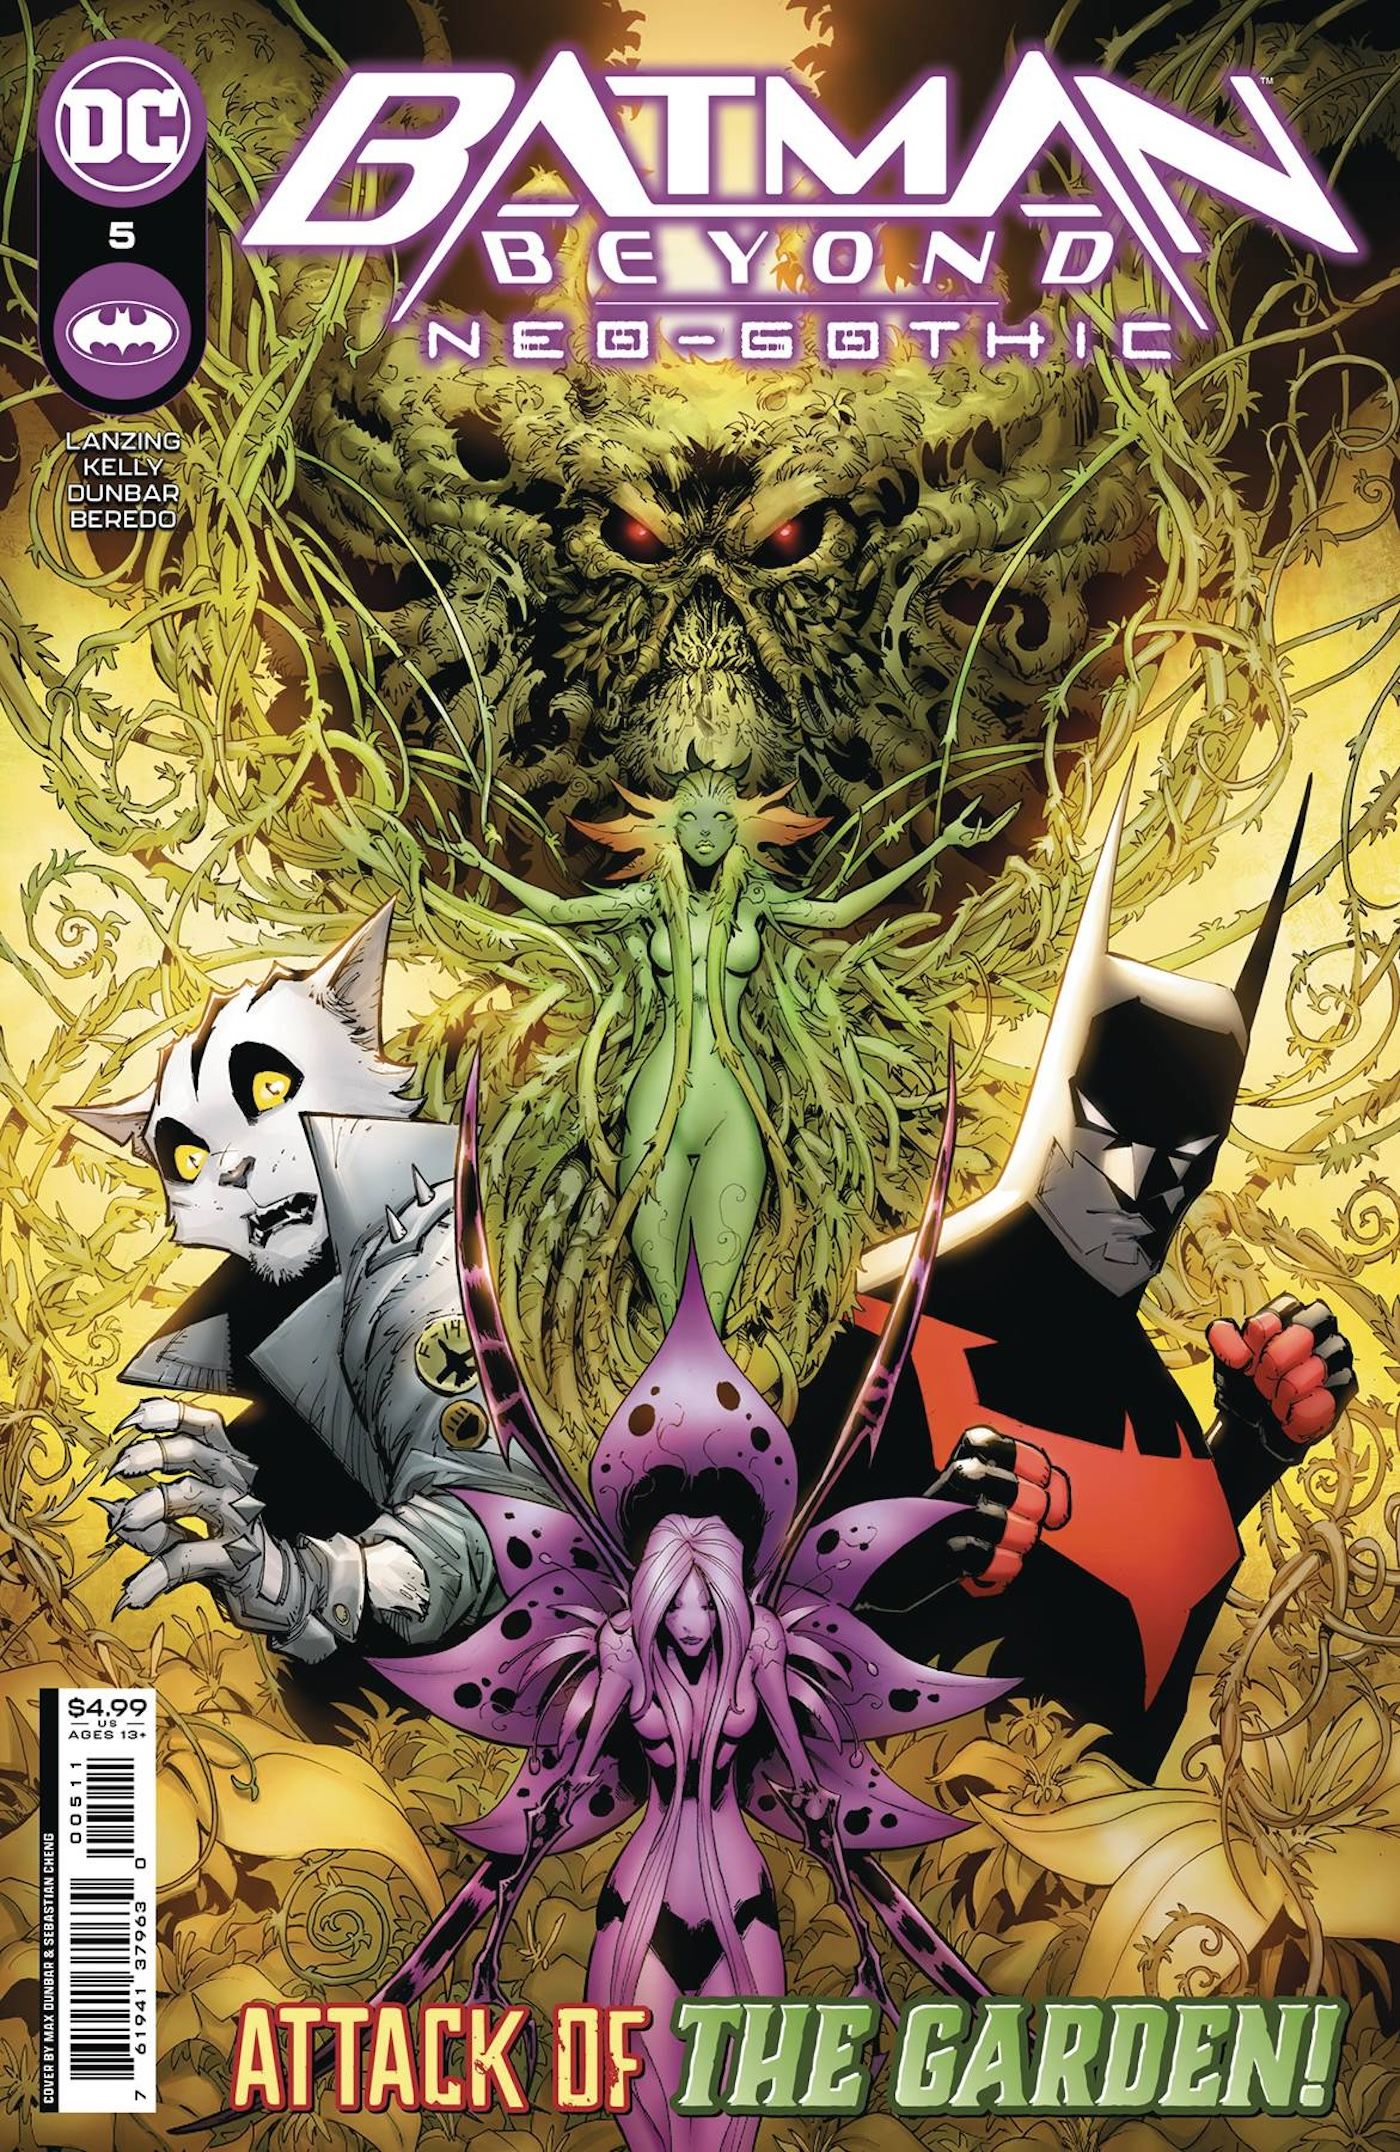 Comic-Cover: Kostümierte Superhelden stehen in der Mitte, umgeben von Pflanzenmonstern.